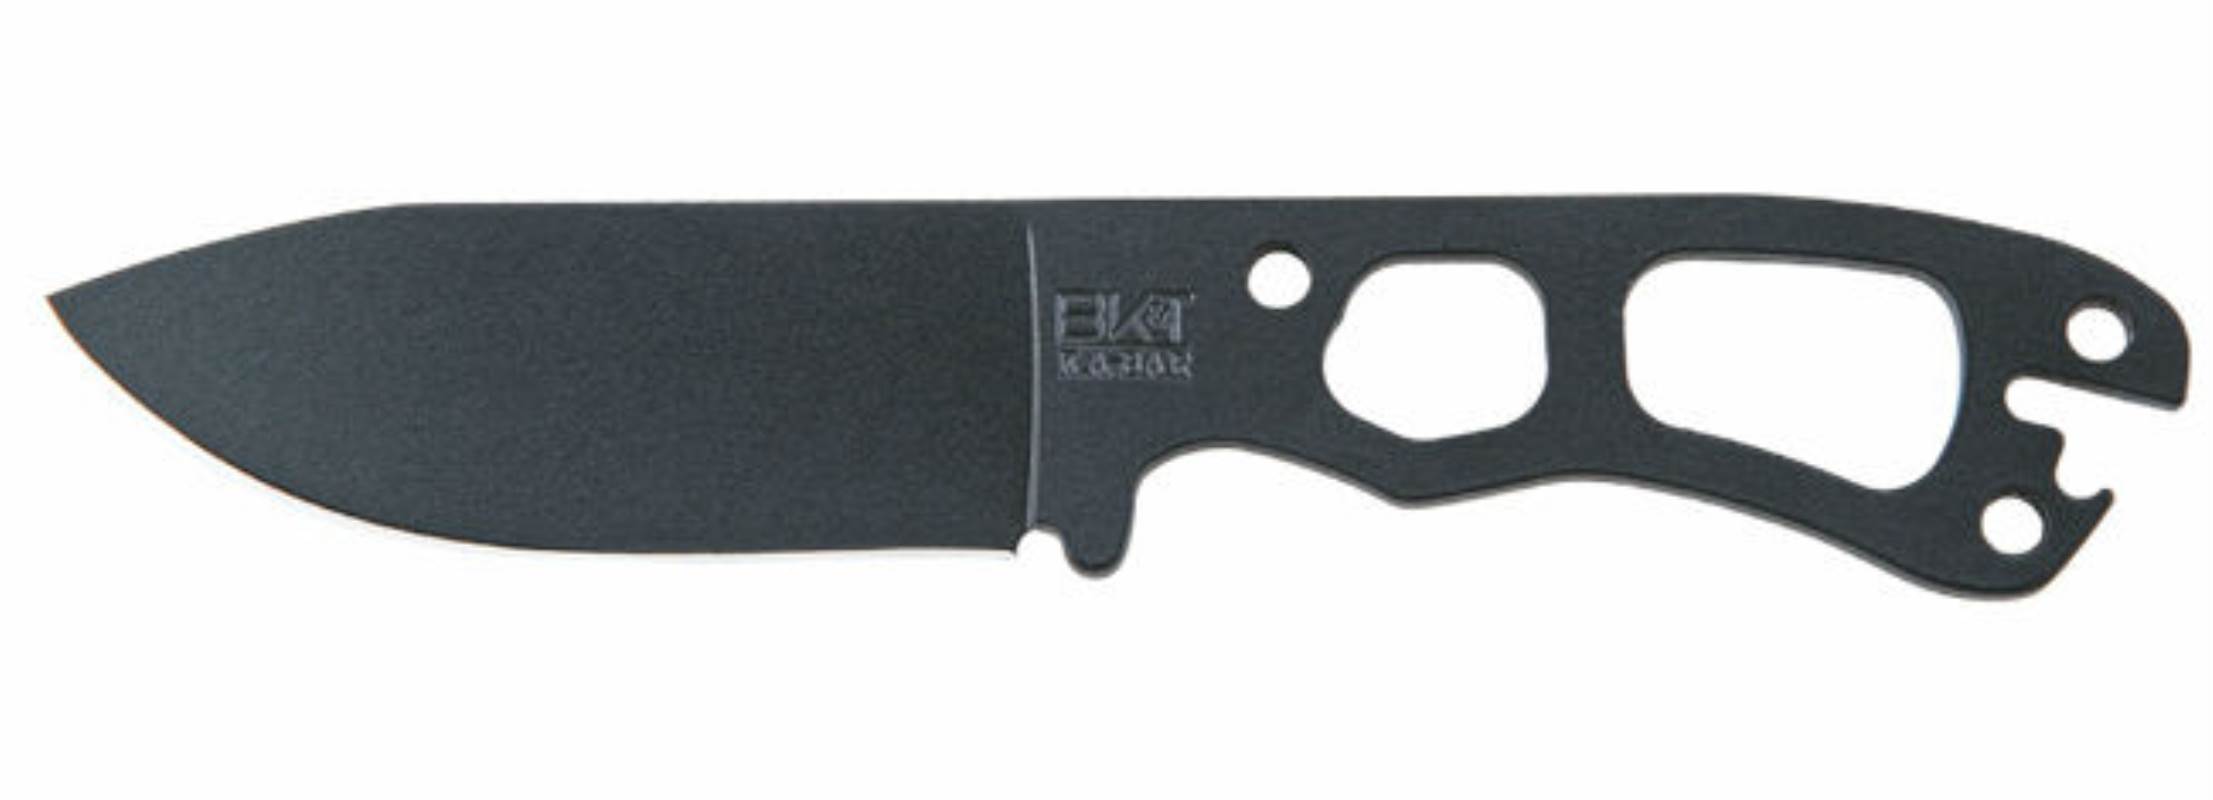 Becker Necker Knife